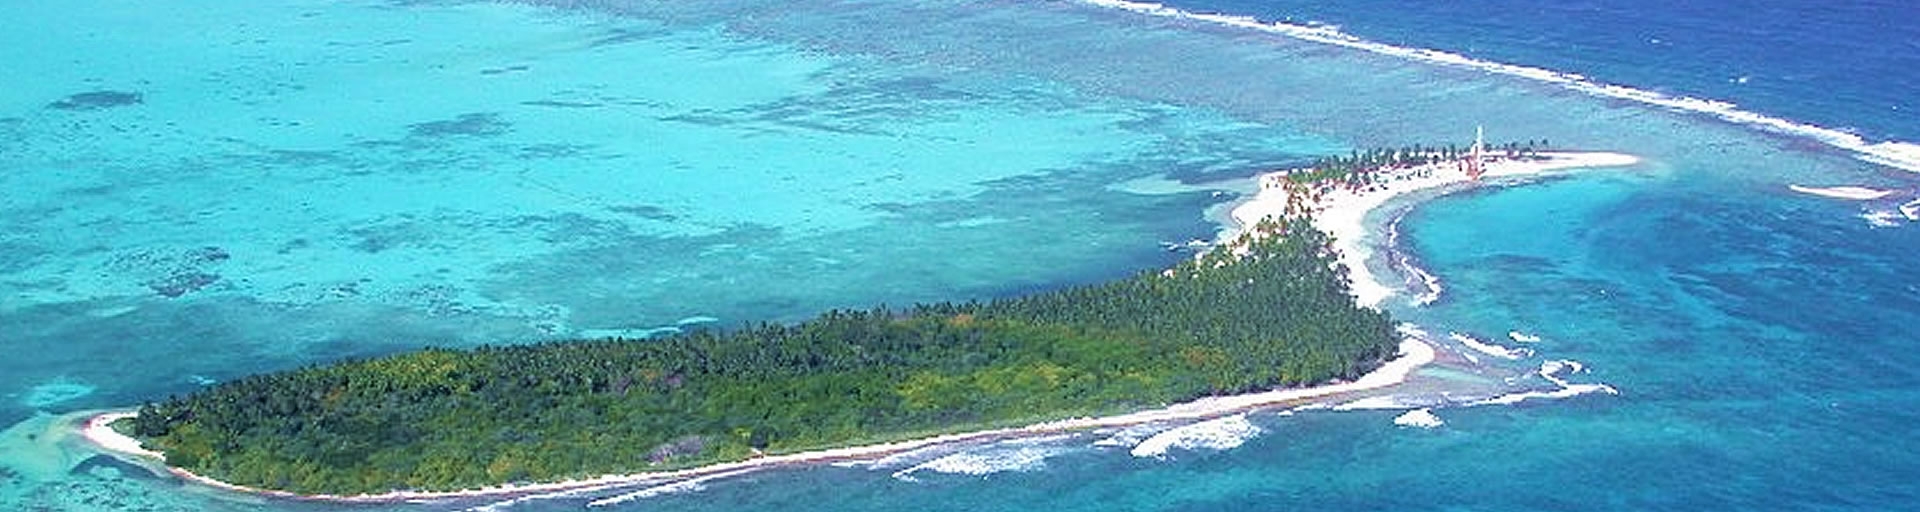 Lighthouse Reef Atoll Basecamp and kayaking on Half Moon Caye